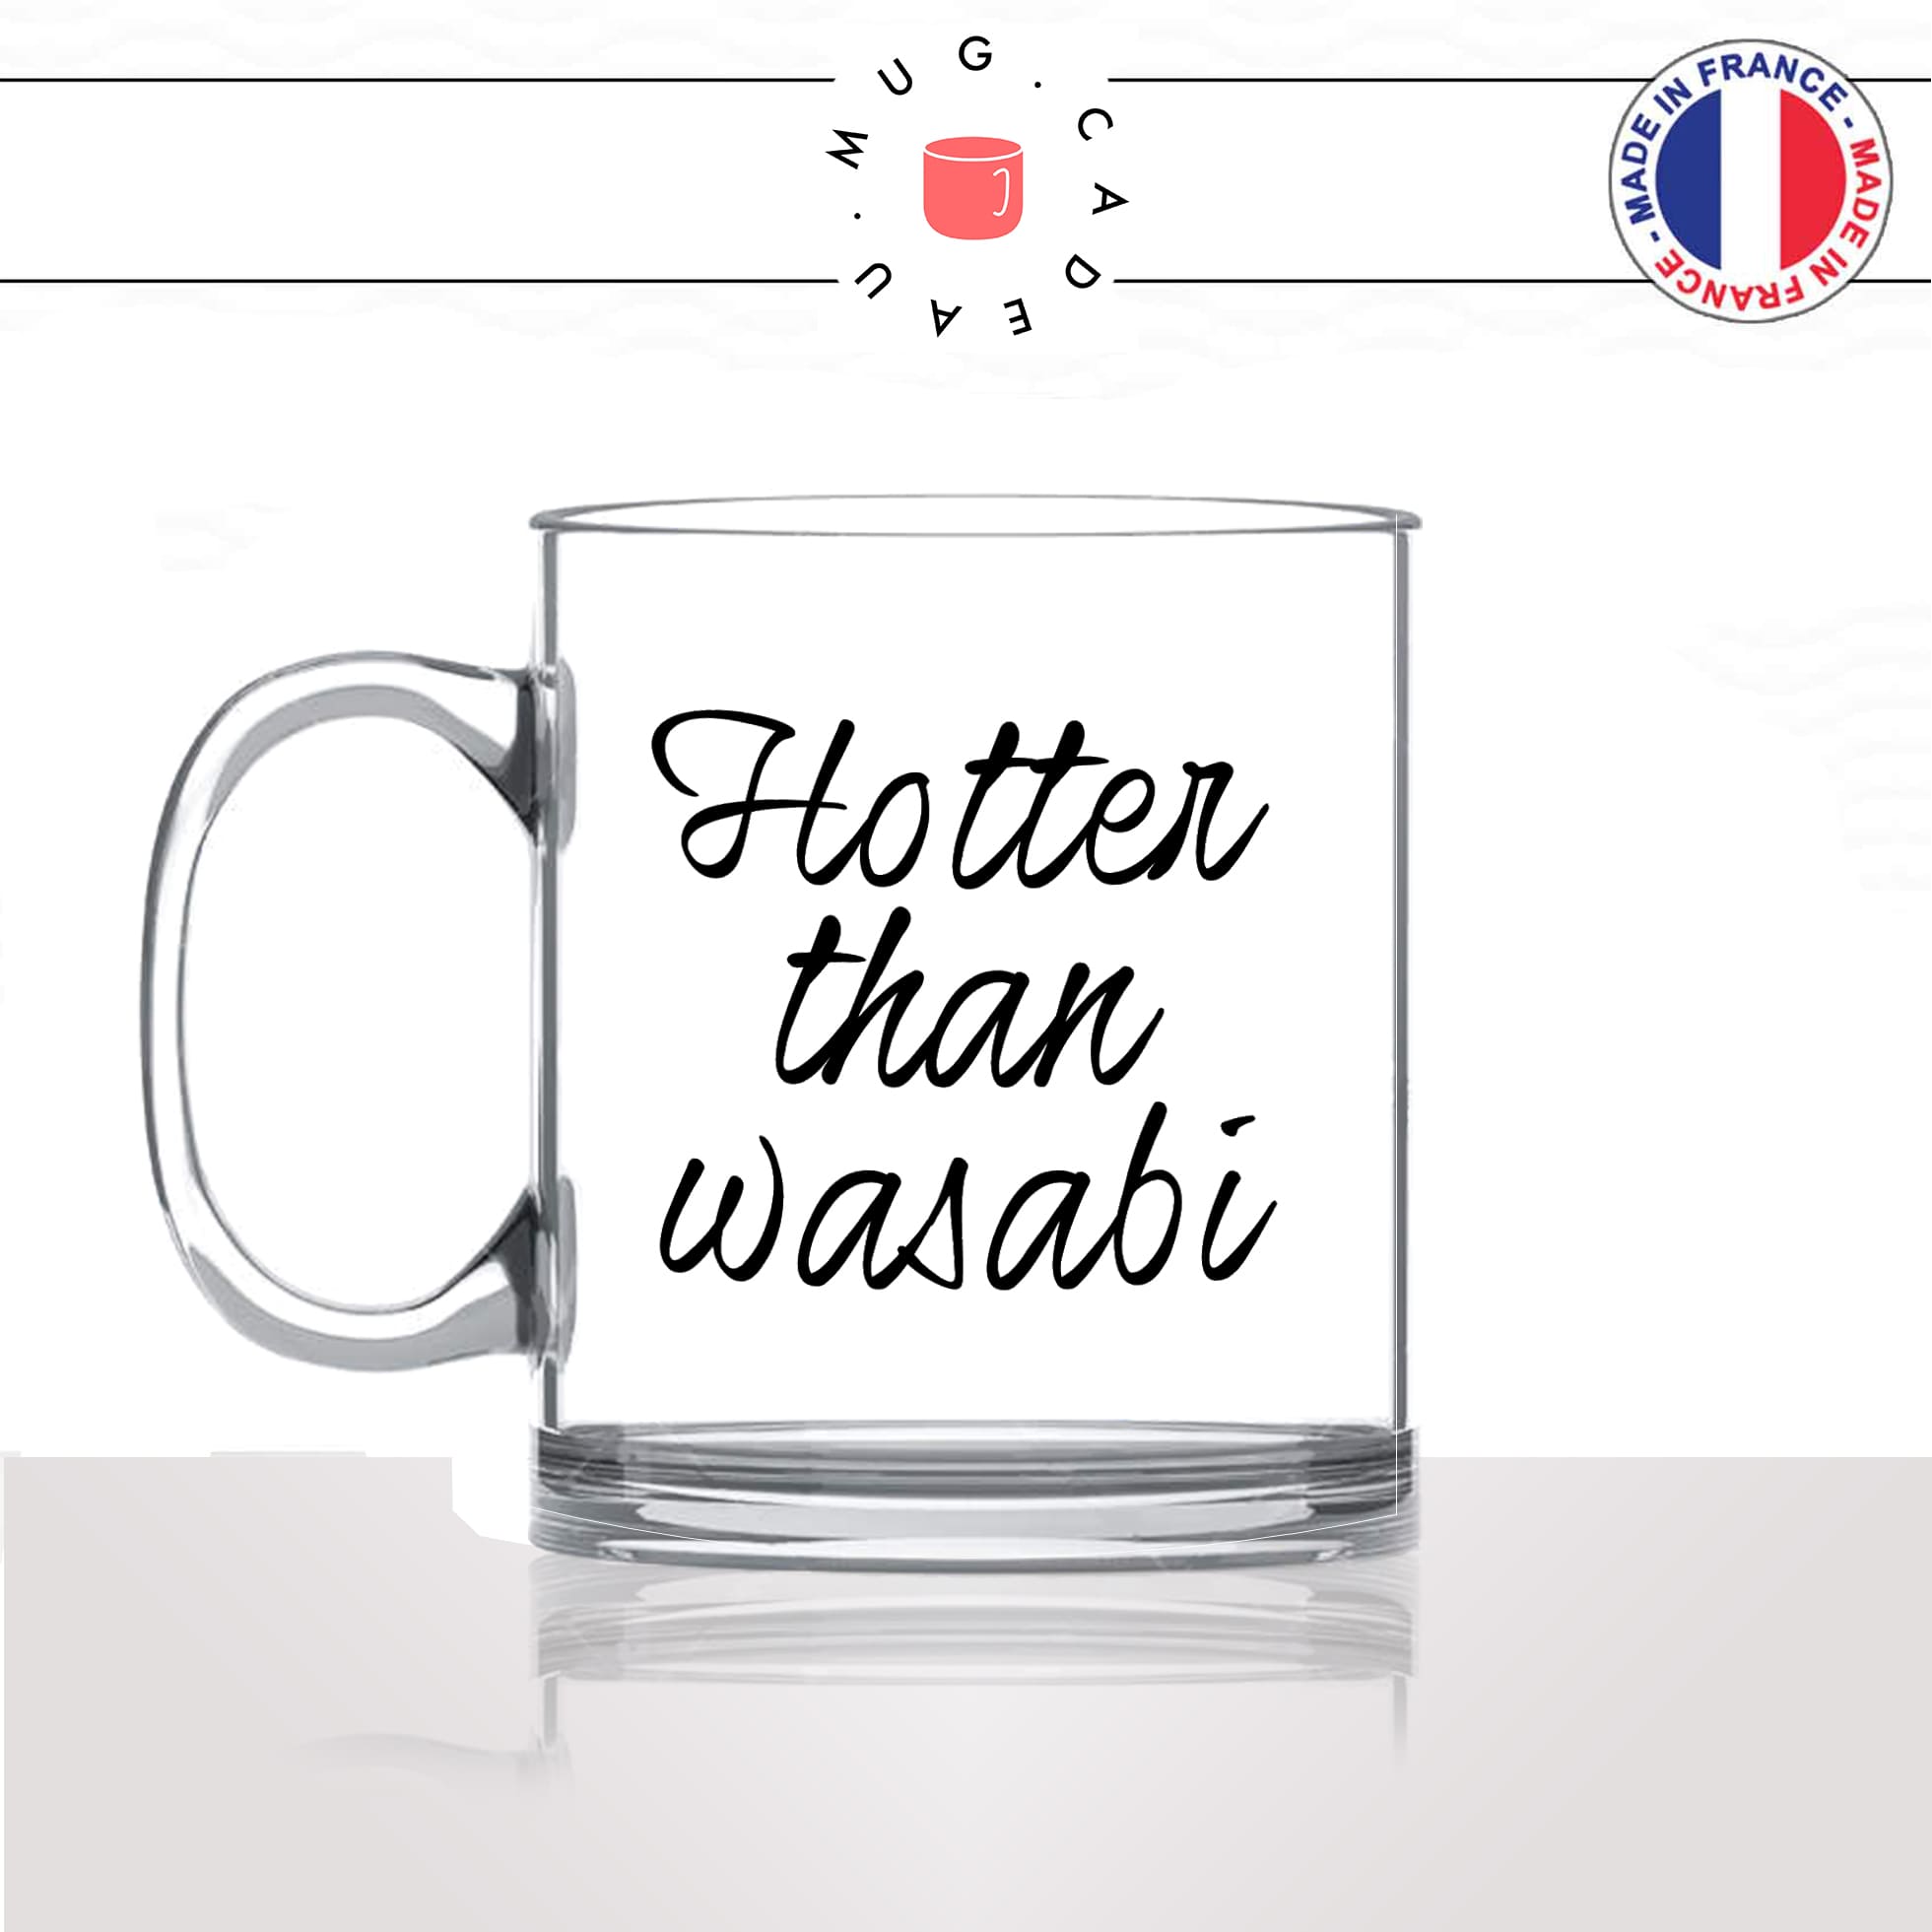 mug-tasse-en-verre-transparent-glass-hotter-than-wasabi-plus-chaude-piment-sexy-homme-femme-humour-fun-cool-idée-cadeau-original